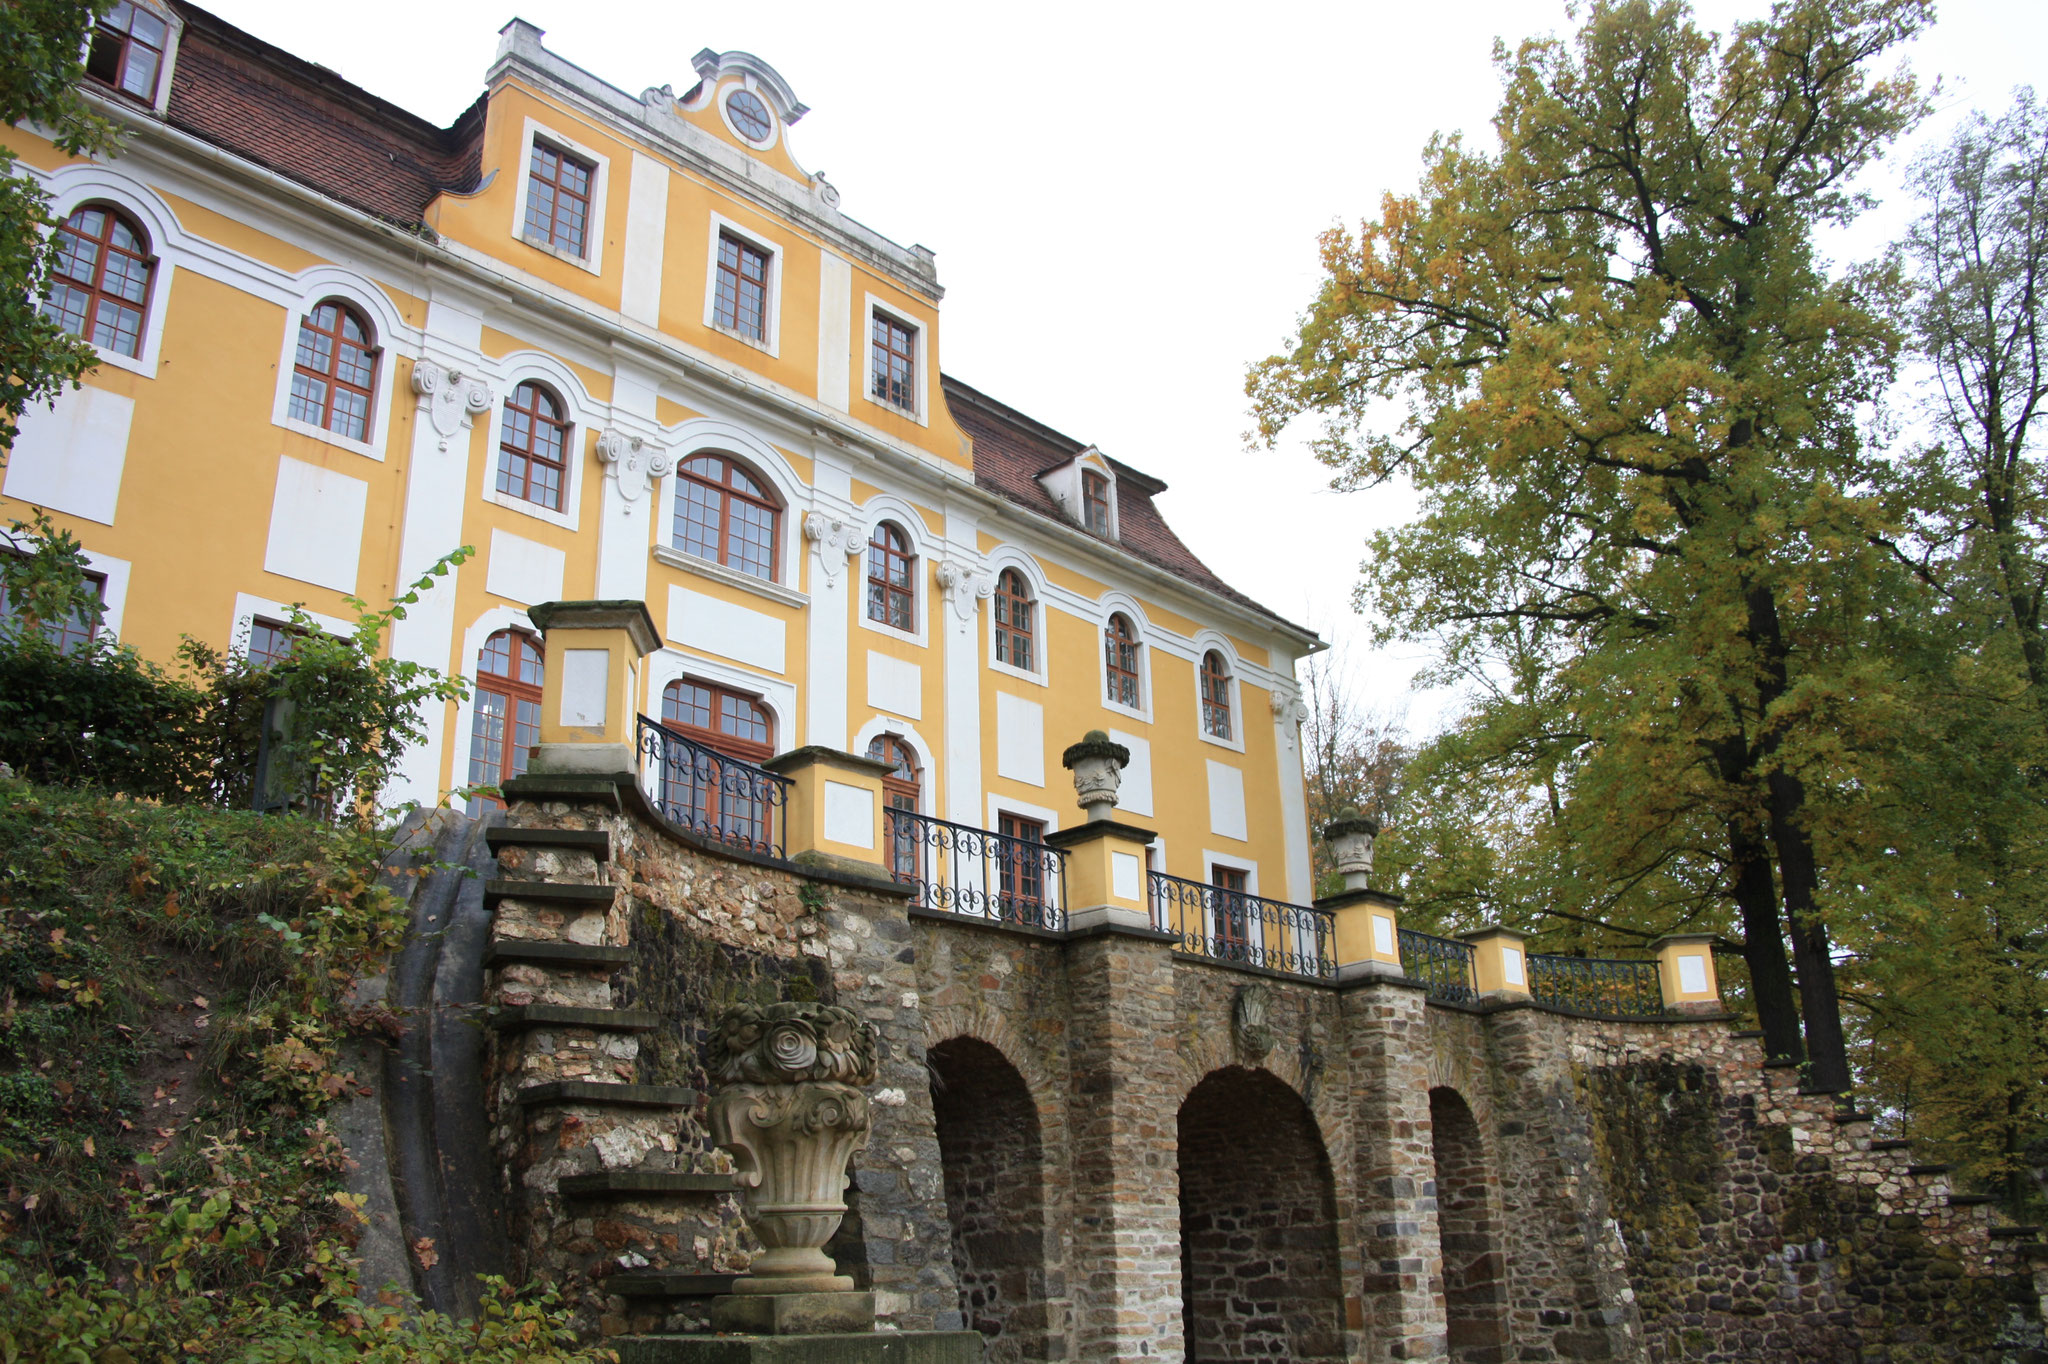 Barockschloss Neschwitz